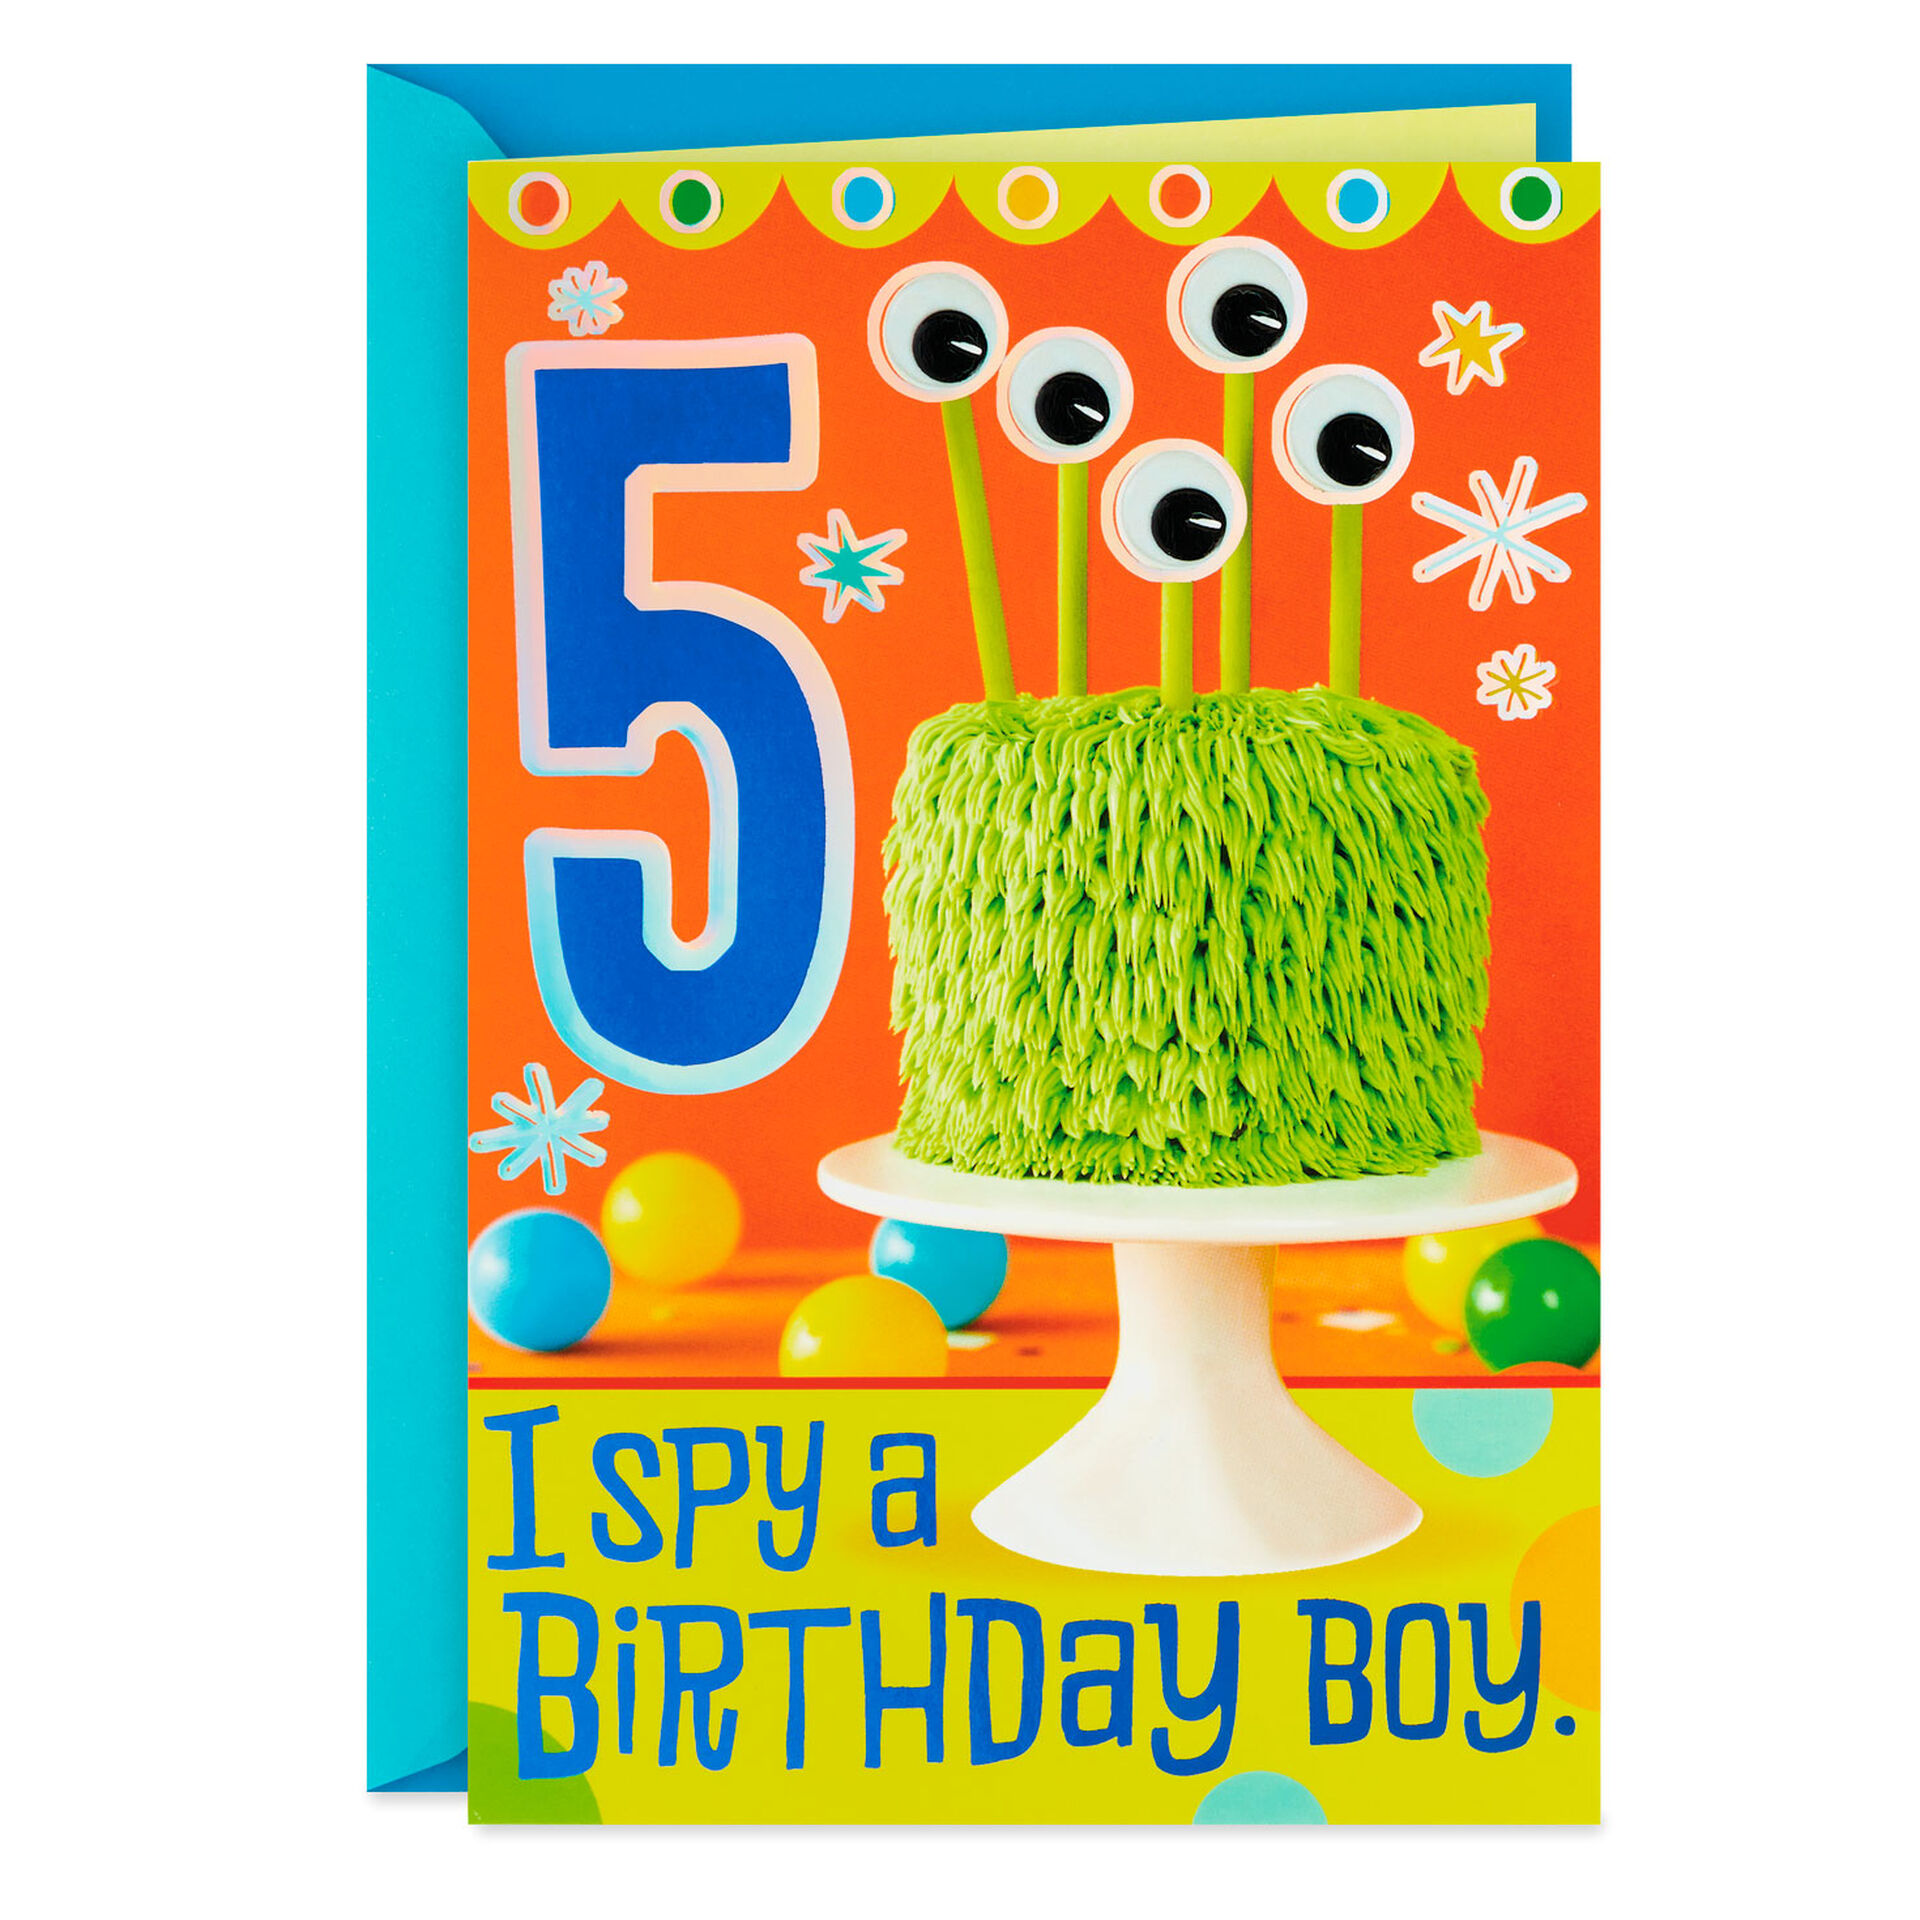 Monster-Cake-5th-Birthday-Card-for-Kids_399HKB9111_01